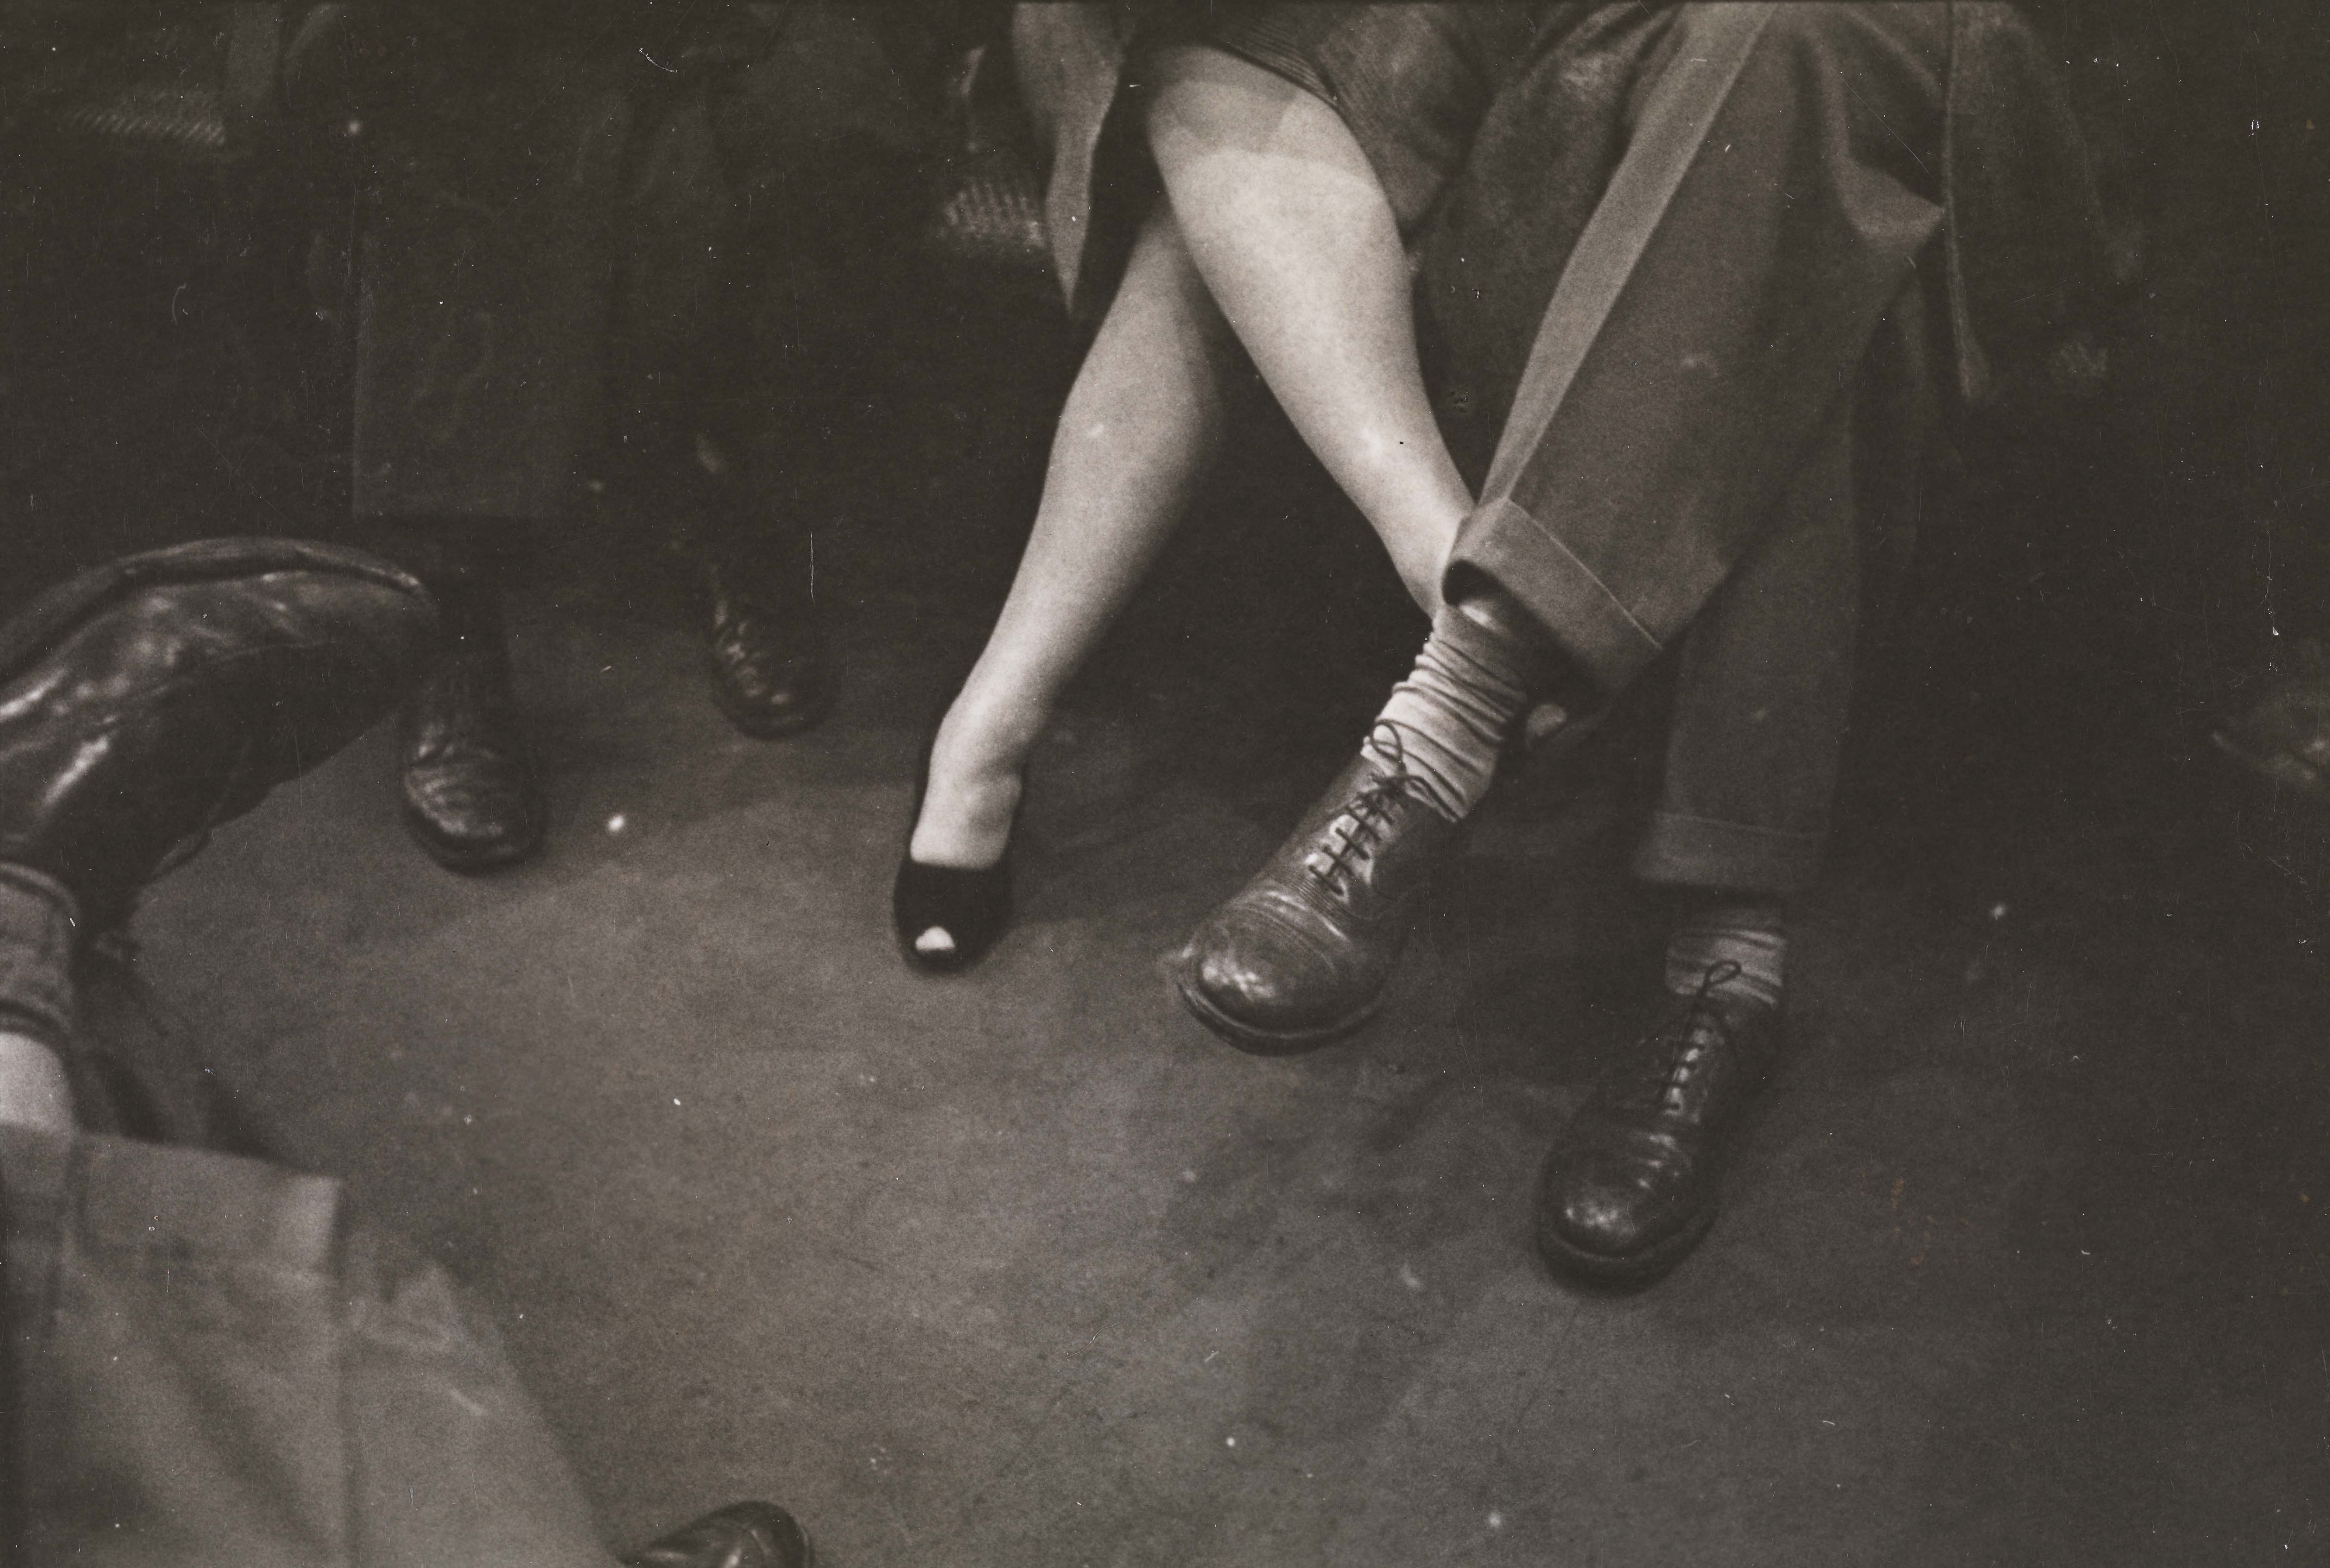 Stanley Kubrick. Vida e amor no metrô de Nova York. Casal jogando com os pés no metrô. 1946. Museu da cidade de Nova York. X2011.4.10292.90E